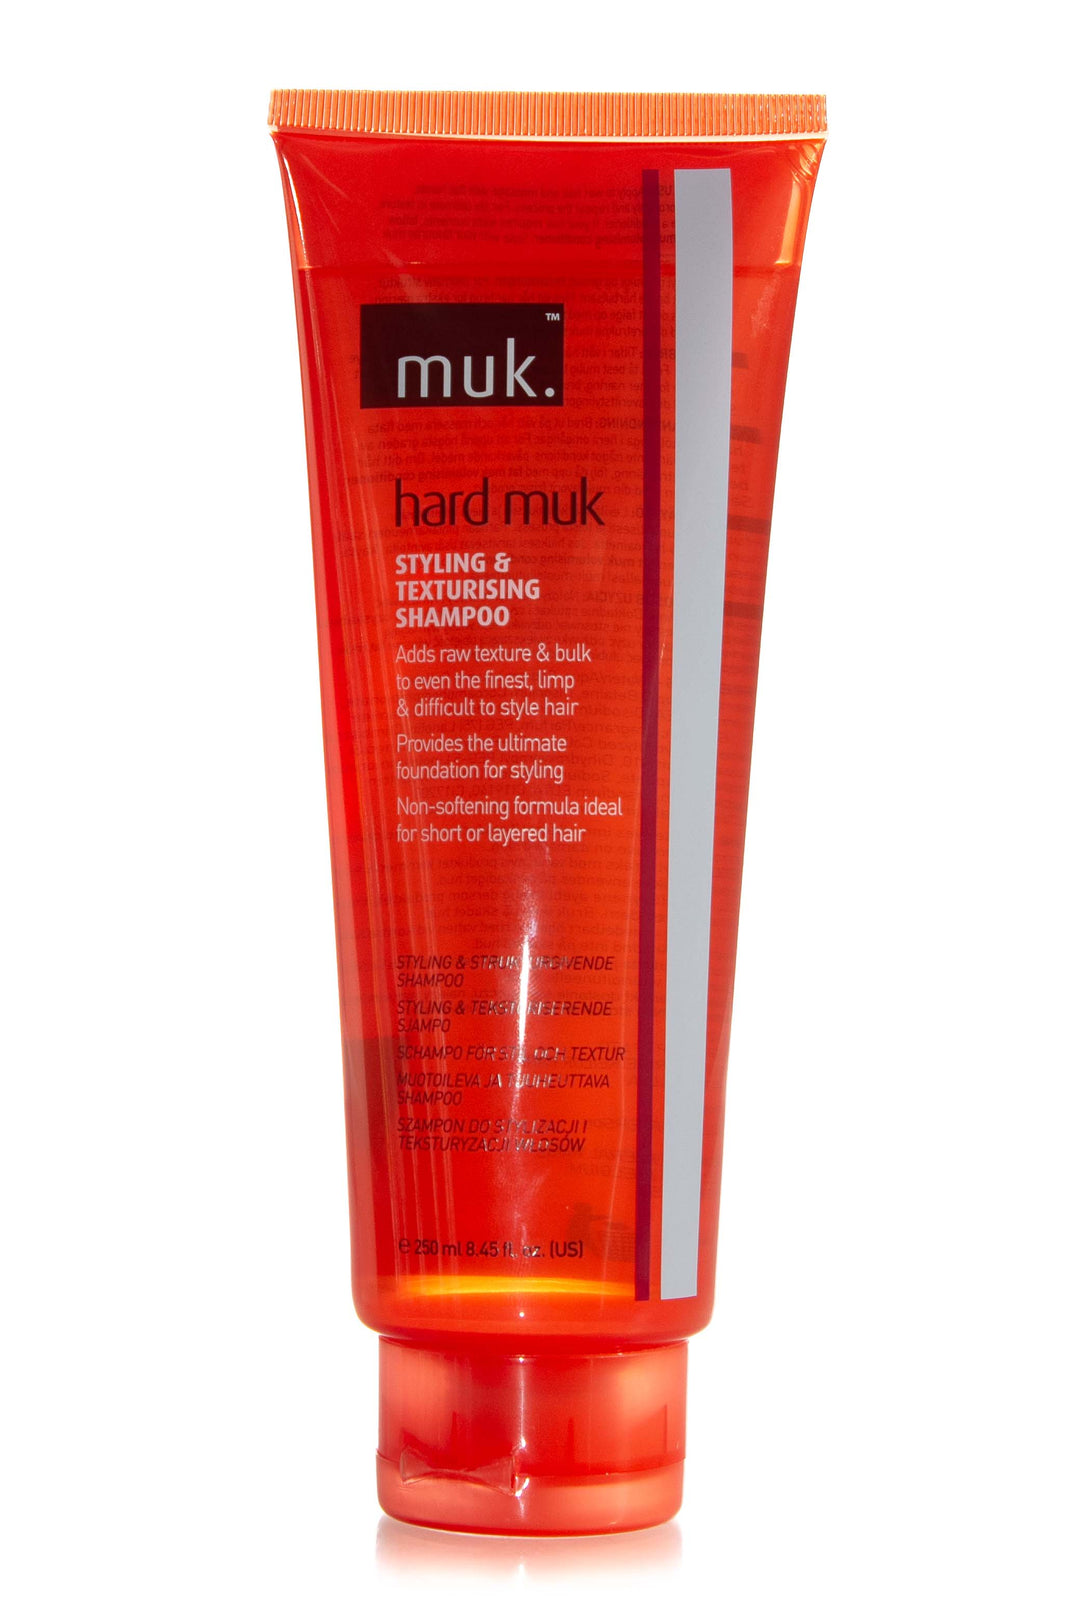 muk-hard-muk-styling-and-texturising-shampoo-250ml